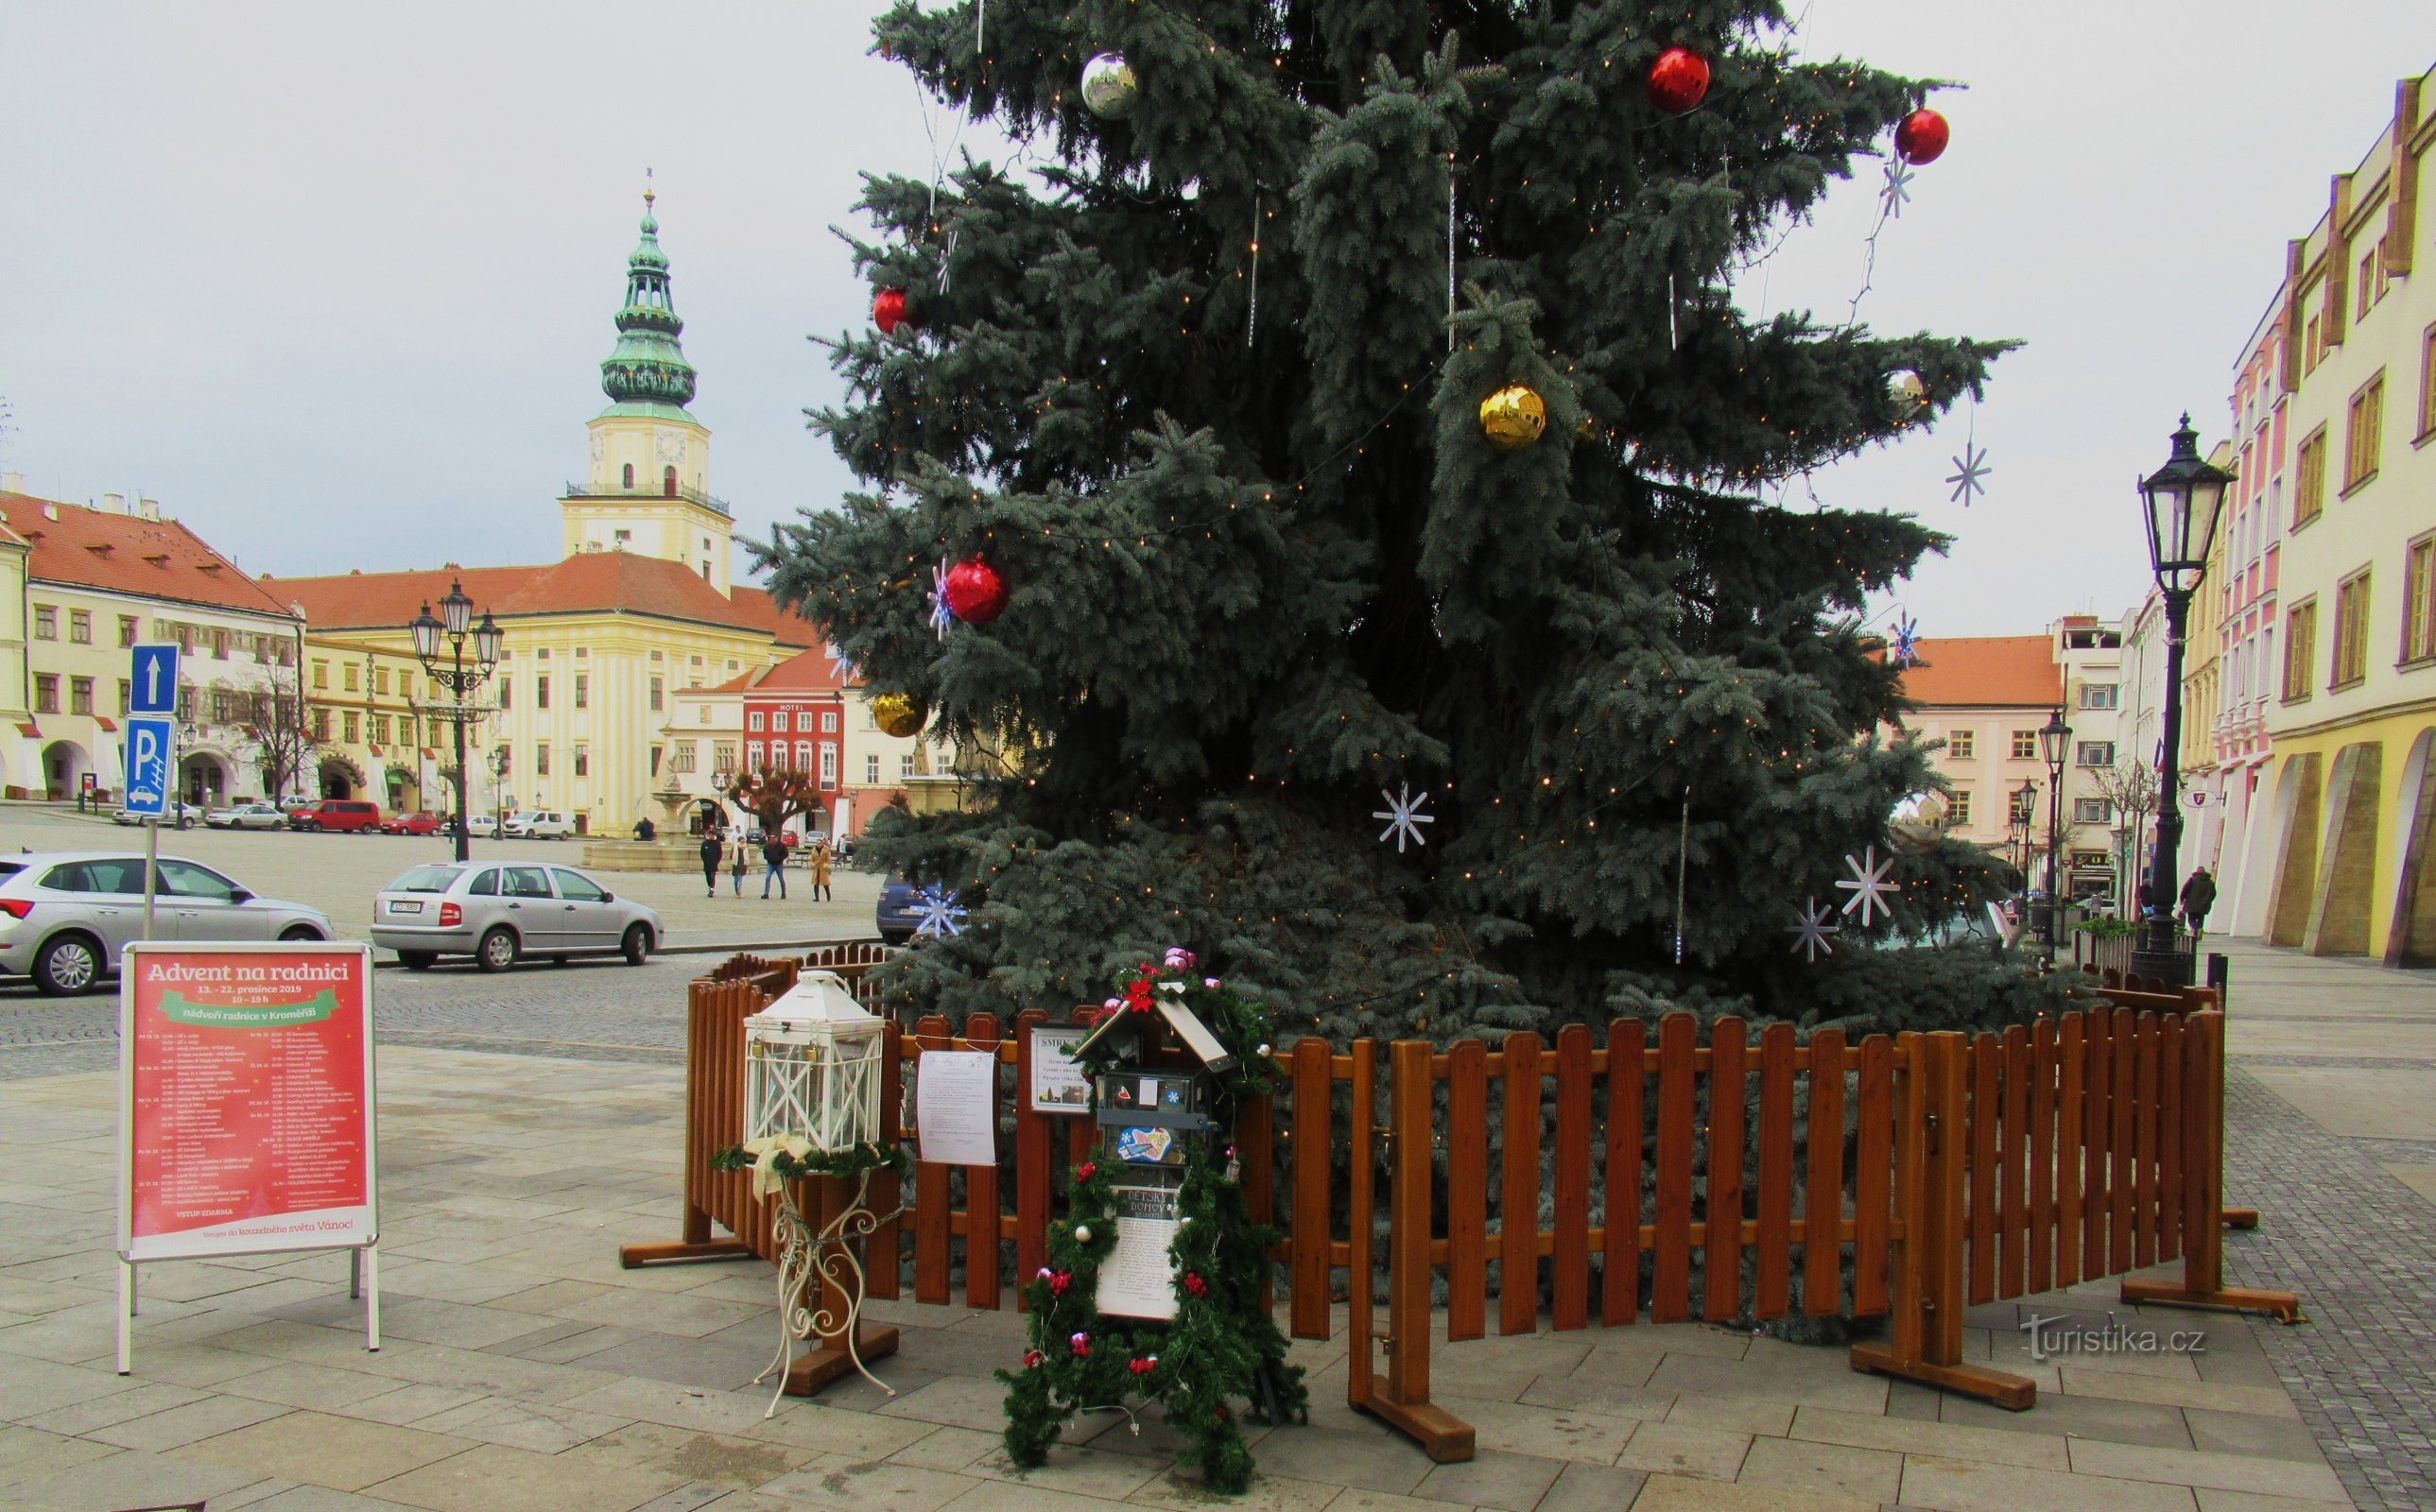 Advent walk through the city of Kroměříž